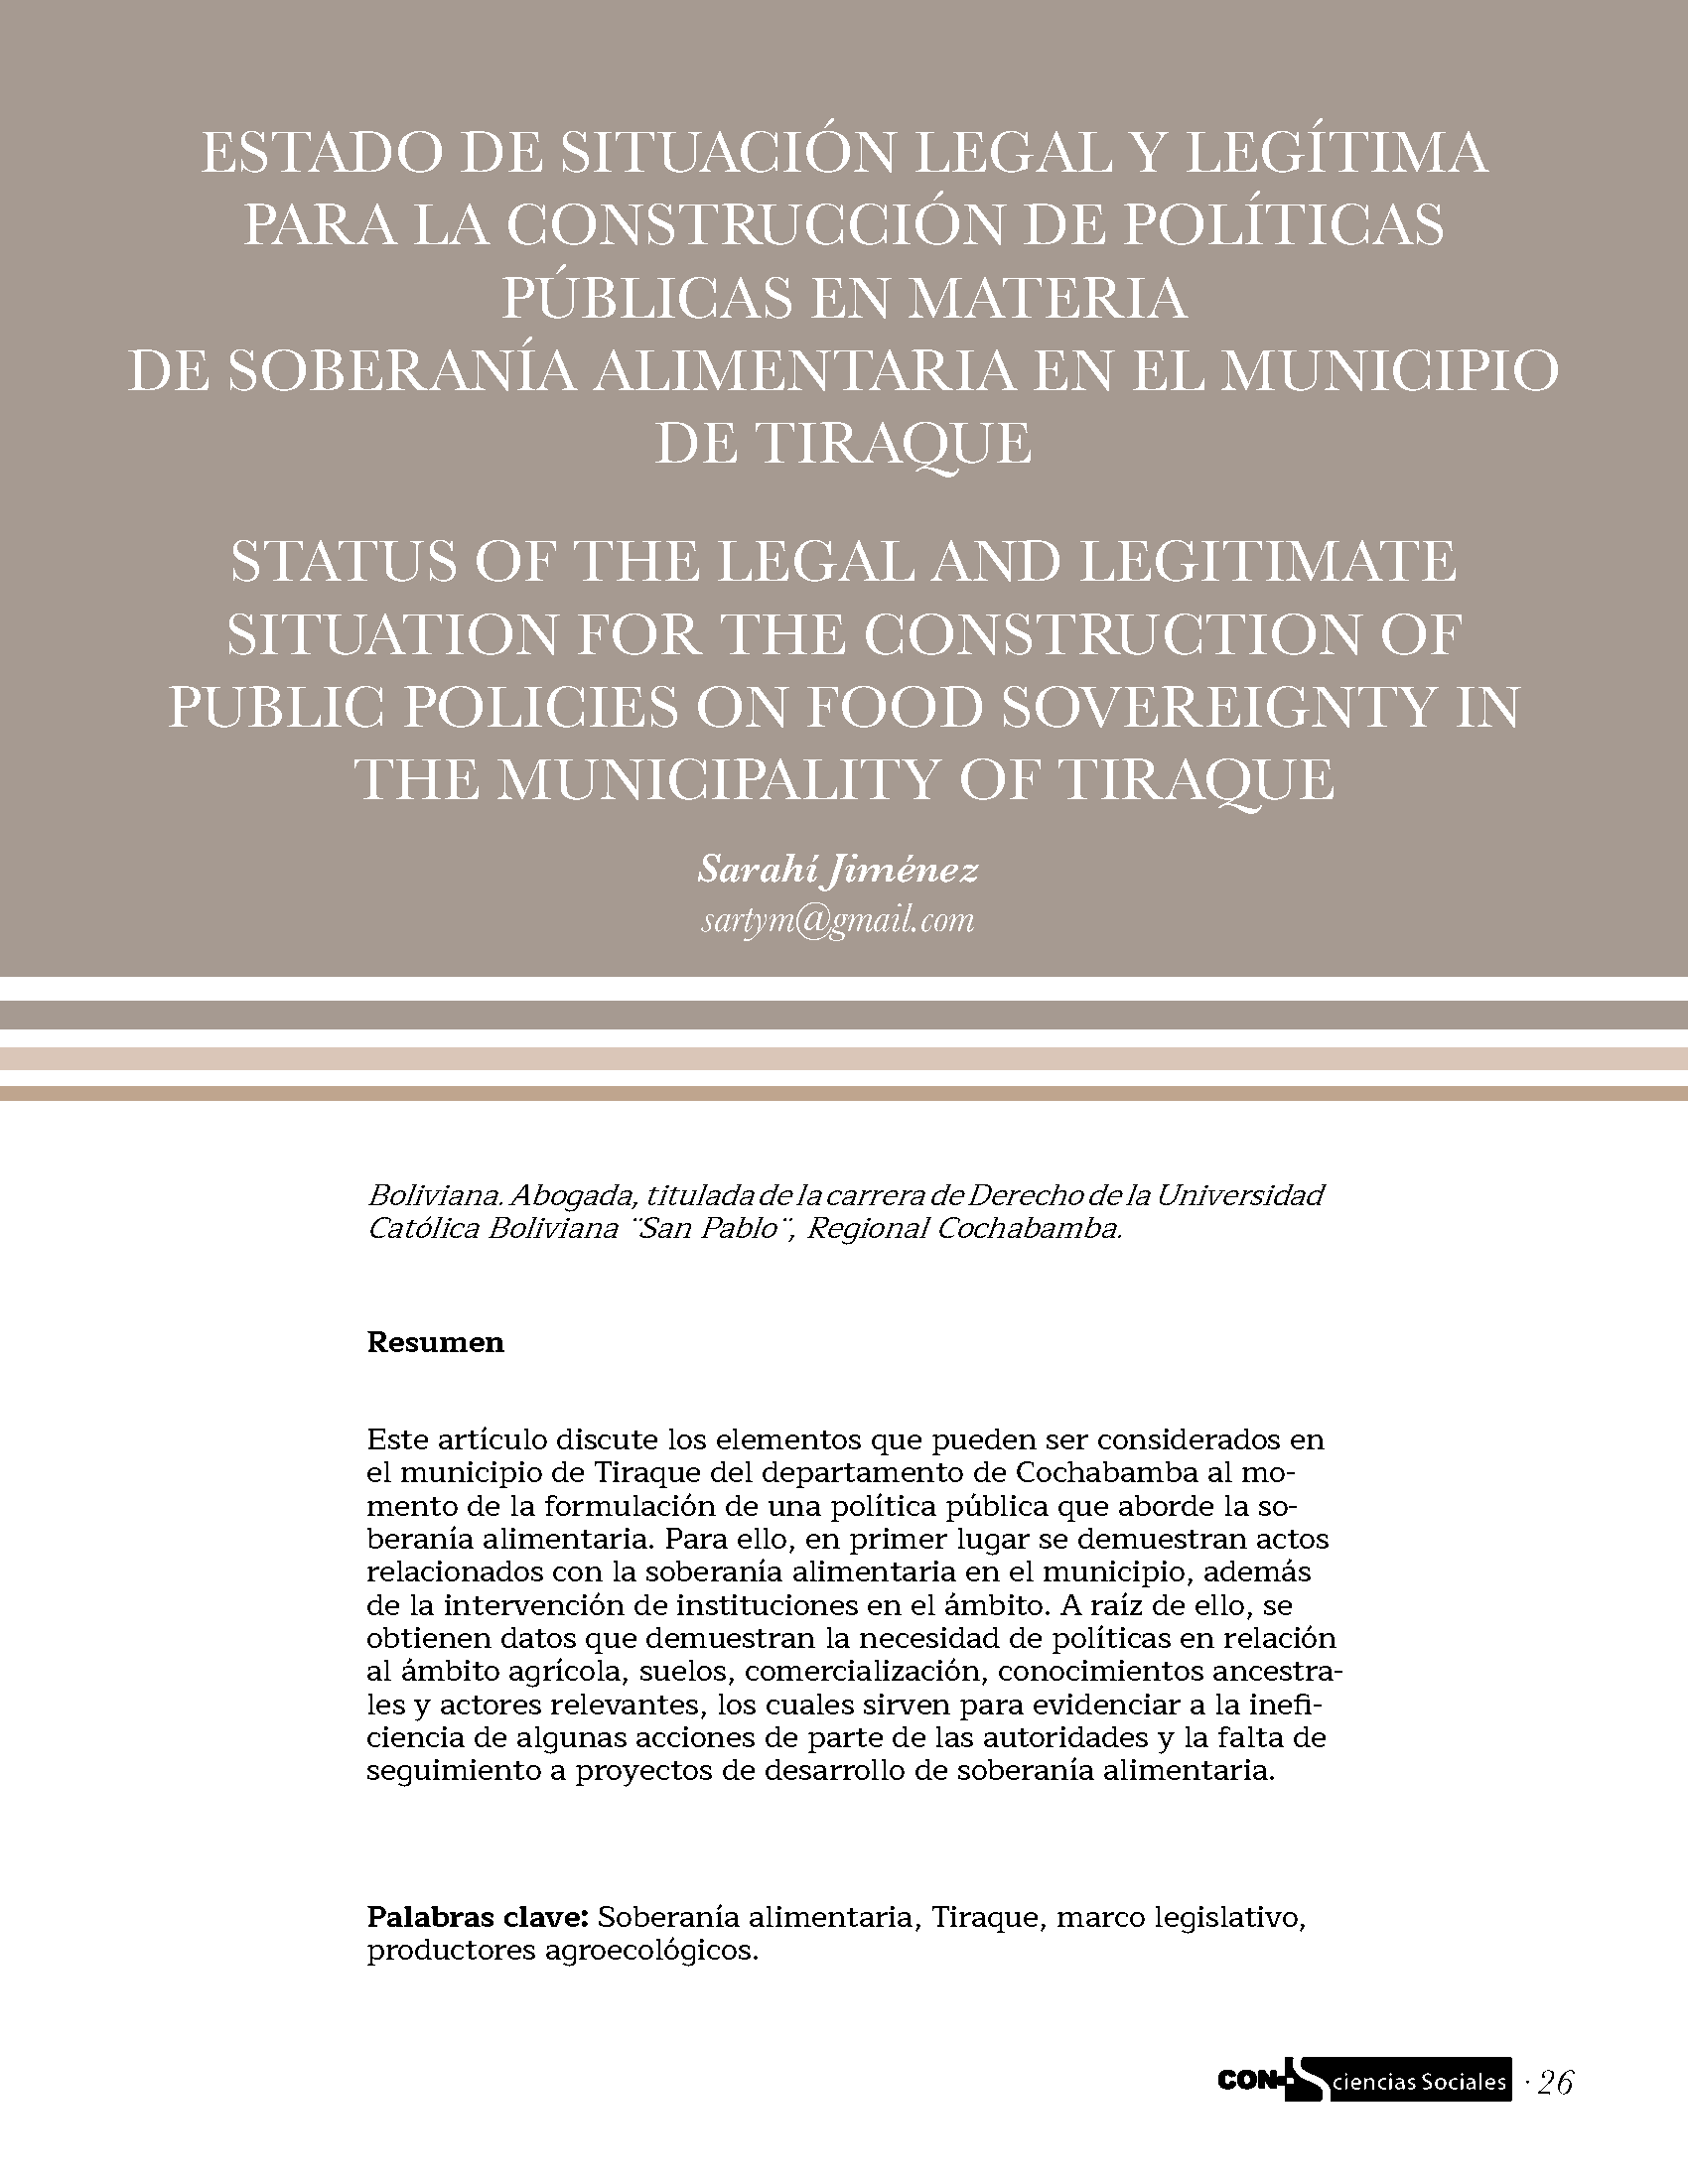 Estado de situación legal y legítima para la construcción de políticas públicas en materia de soberanía alimentaria en el municipio de Tiraque